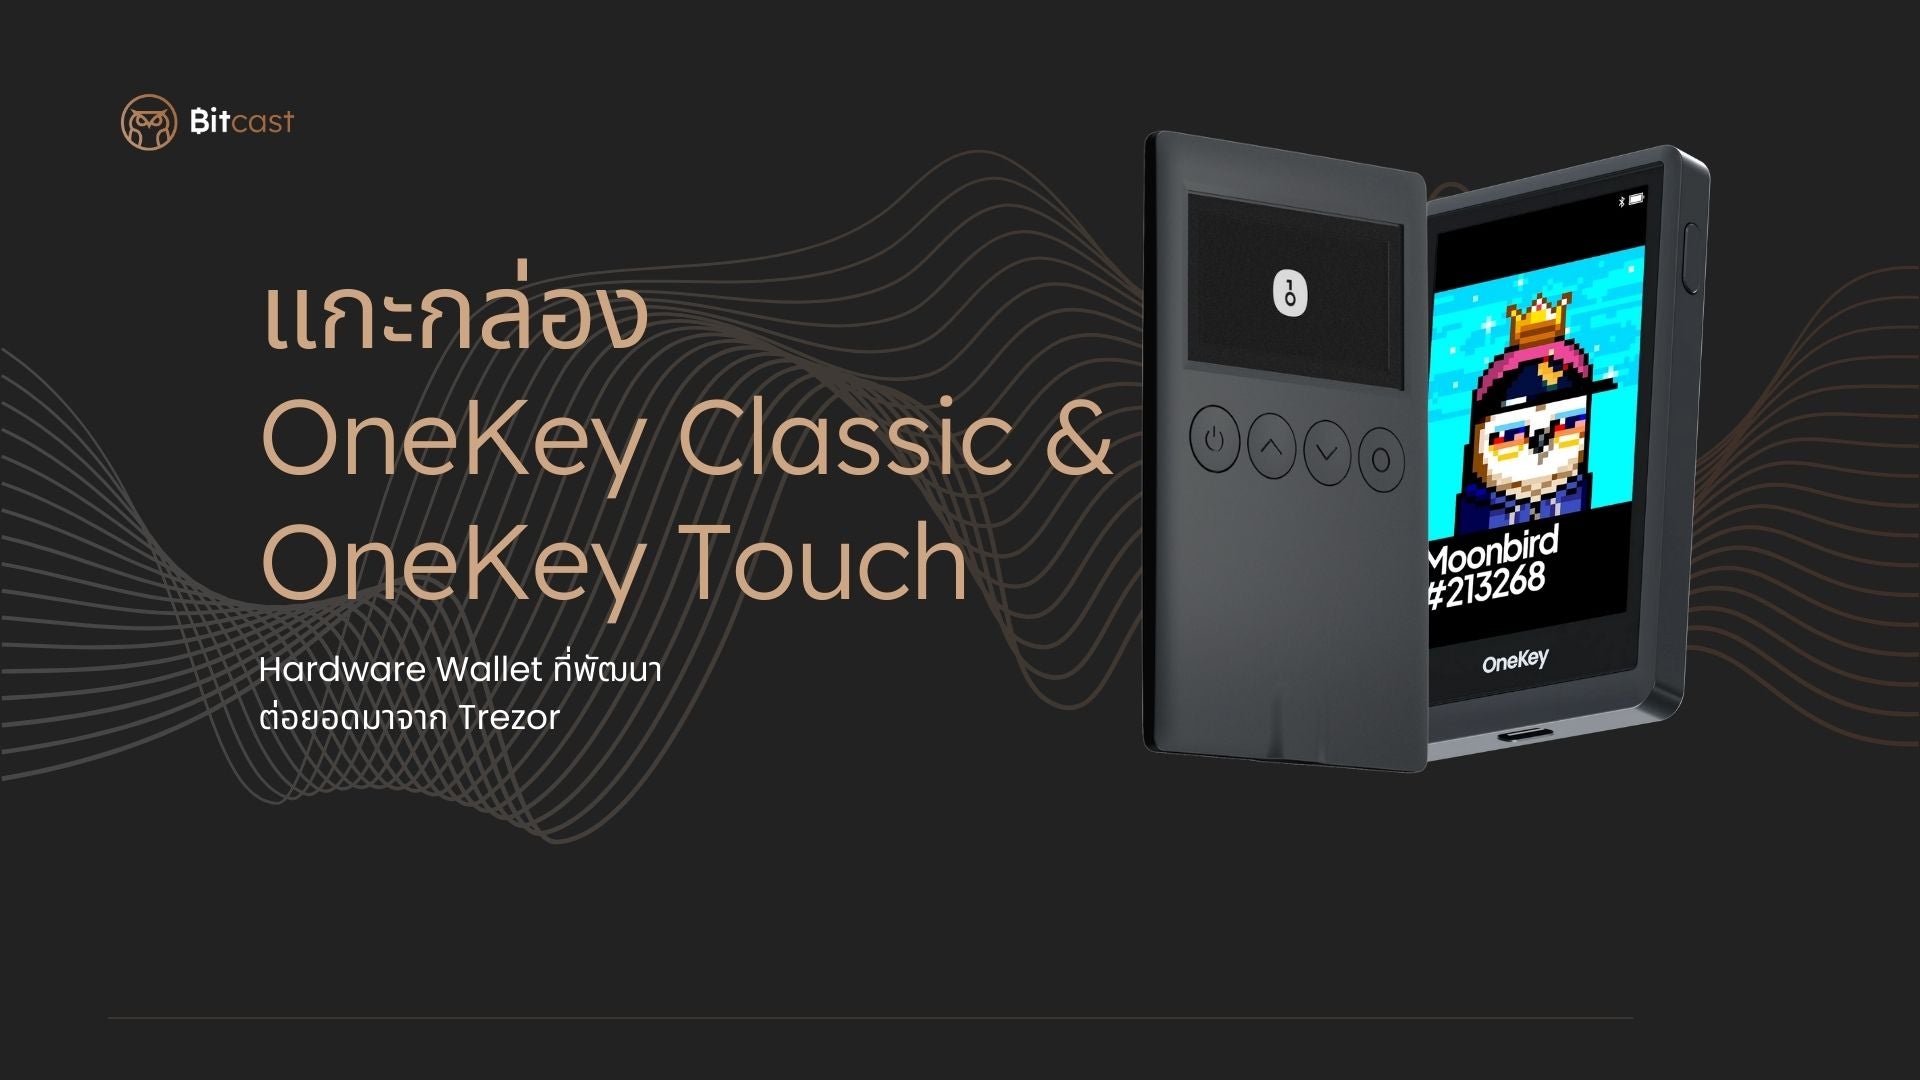 โหลดวิดีโอ: แกะกล่อง OneKey Classic กับ OneKey Touch Hardware Wallet ที่มีพื้นฐานการพัฒนาต่อมาจาก Trezor